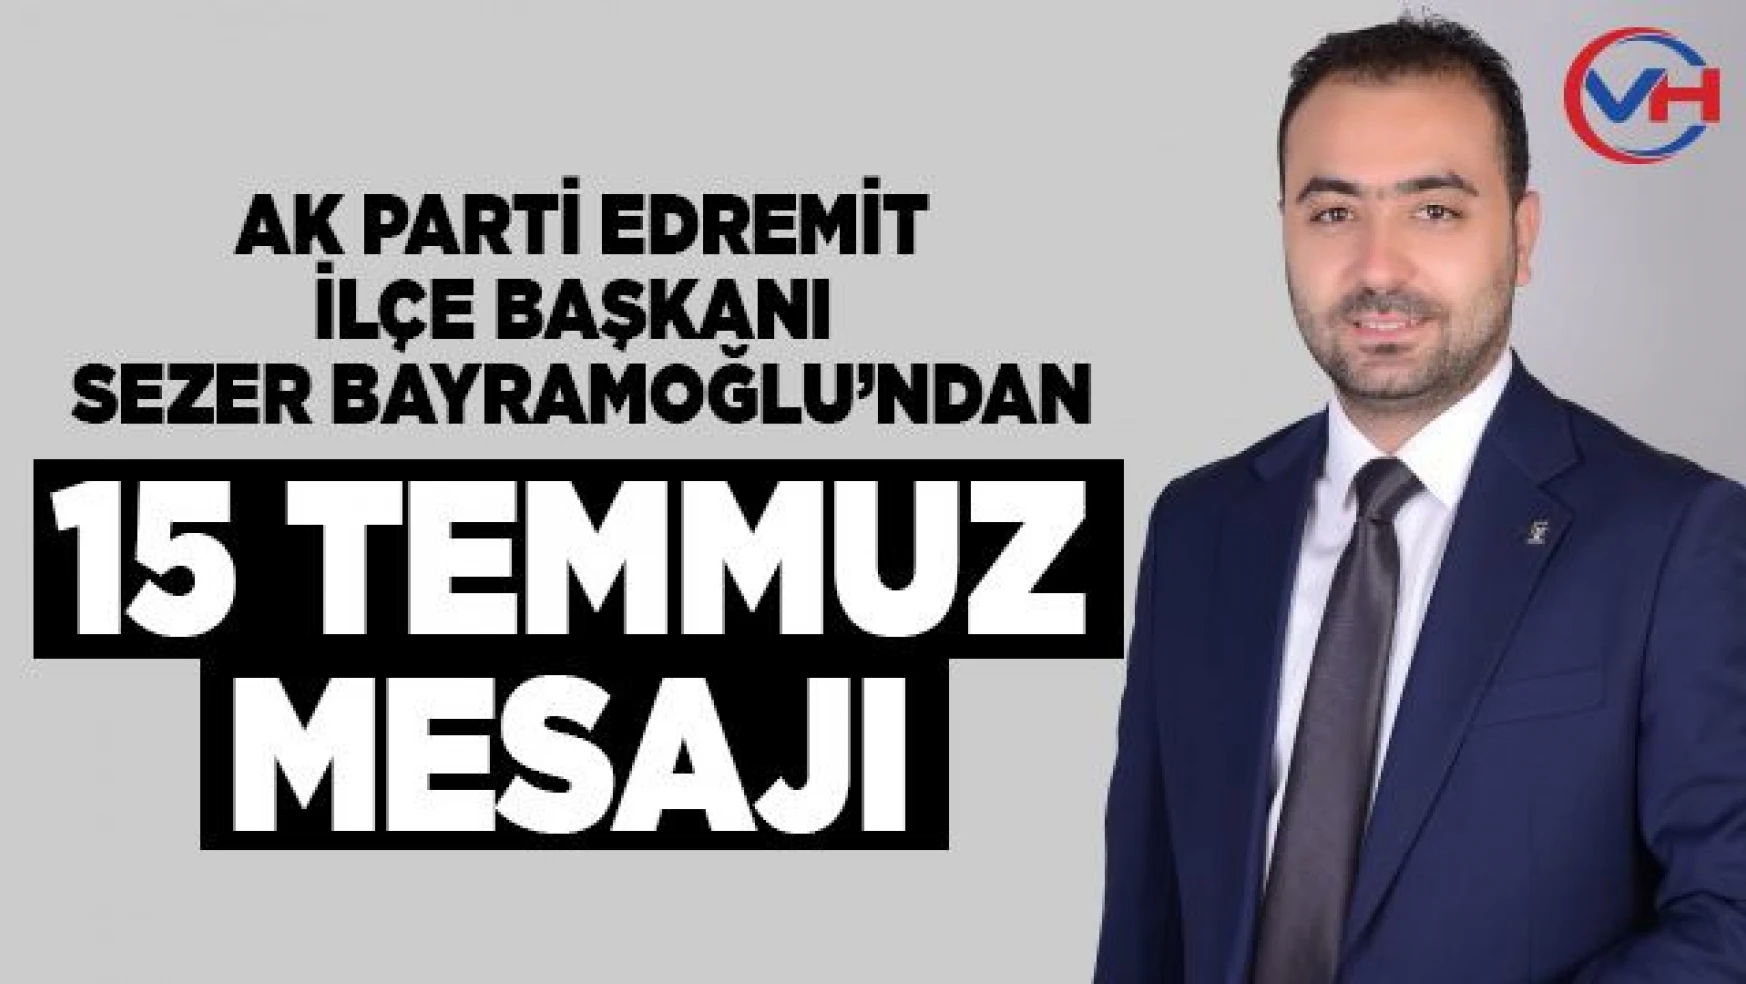 AK Parti Edremit İlçe Başkanı Bayramoğlu'ndan 15 Temmuz mesajı